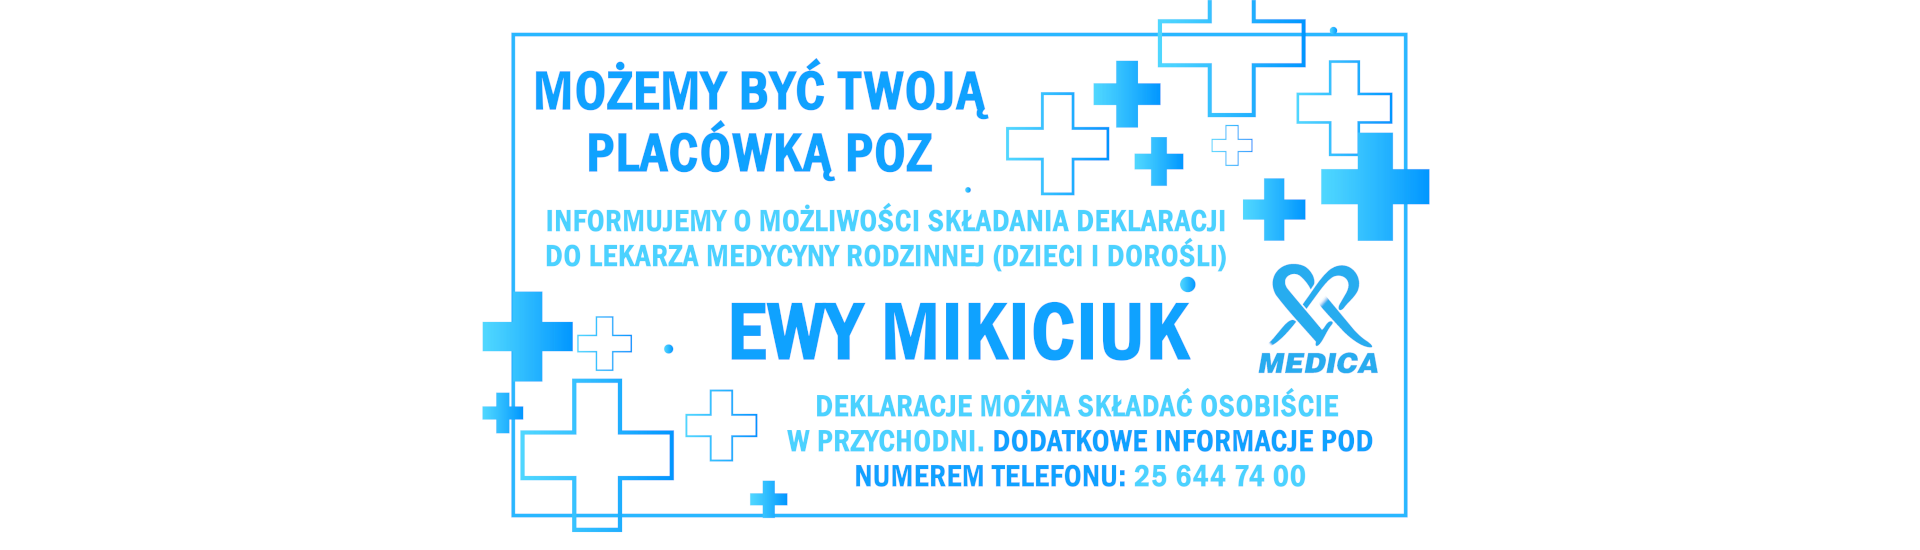 Ewa Mikiciuk - nowy lekarz POZ - Medica Siedlce